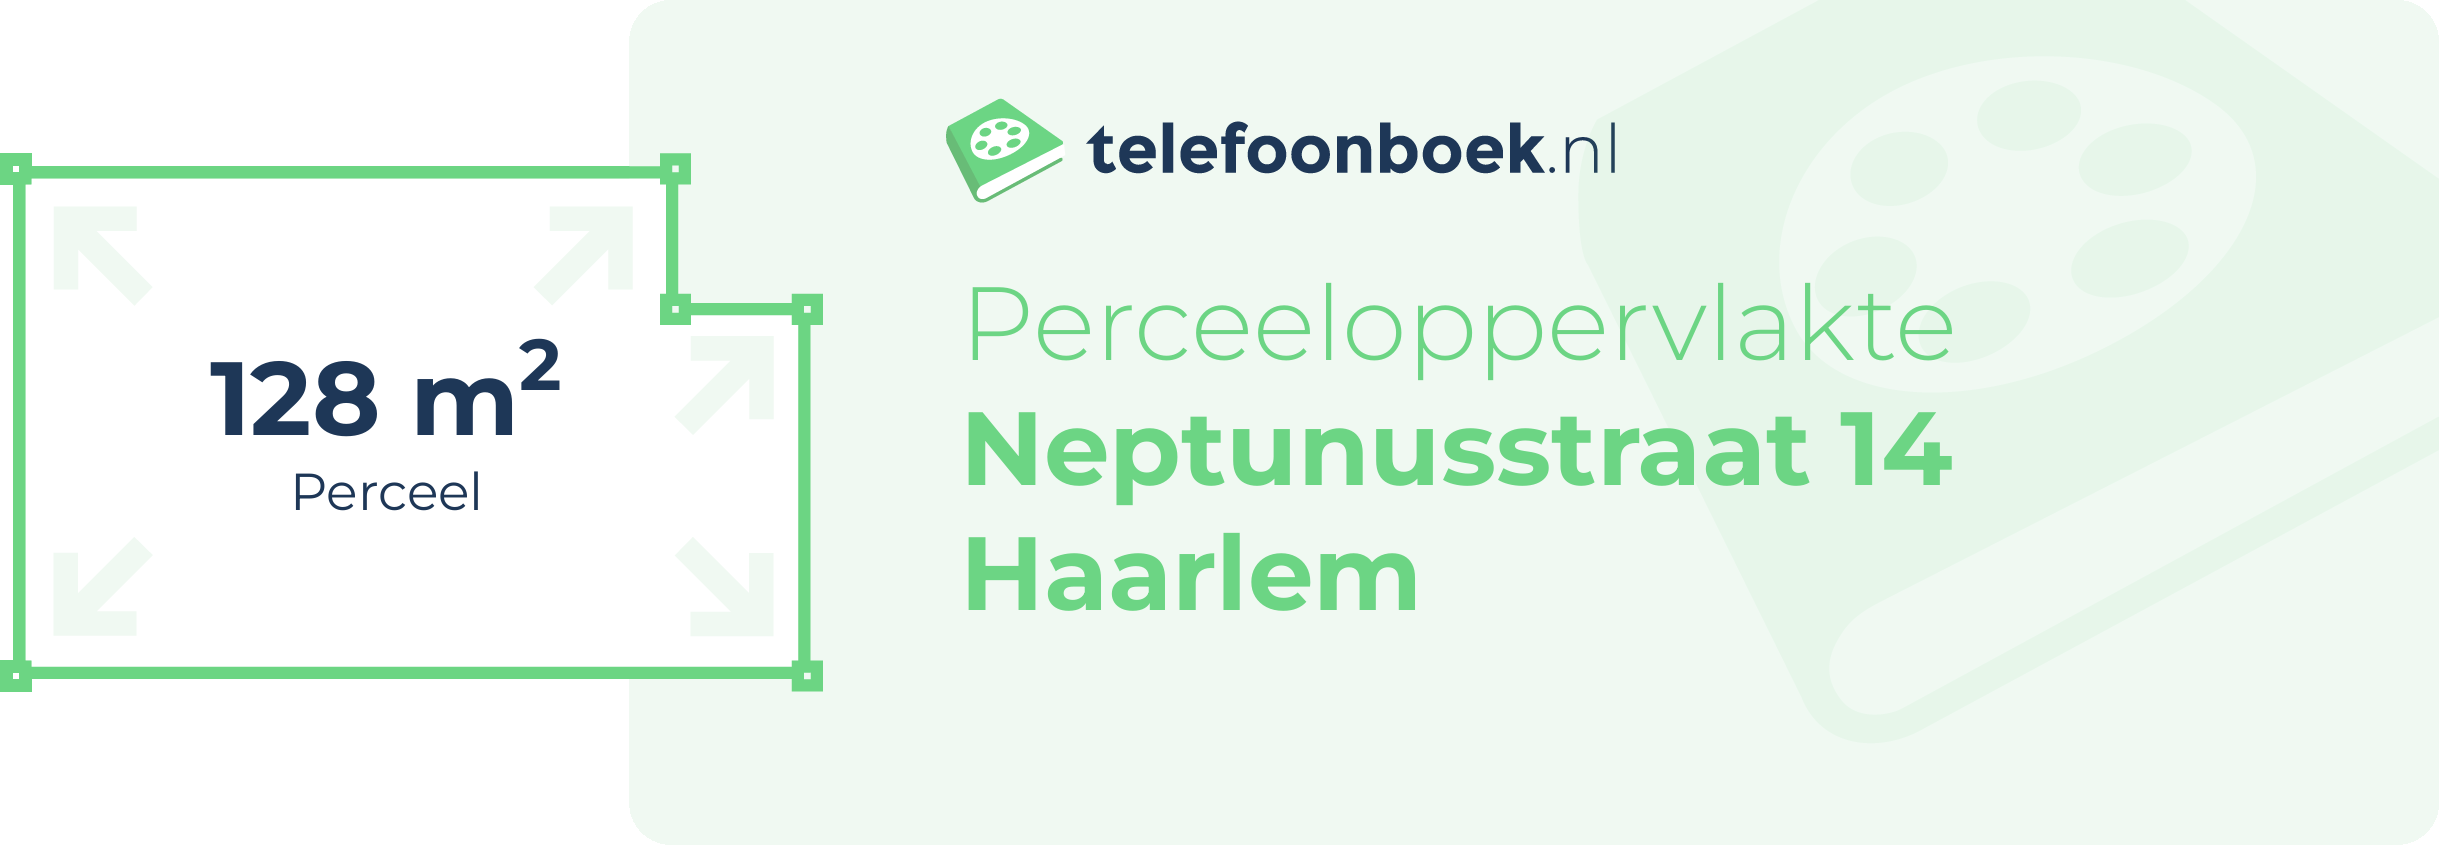 Perceeloppervlakte Neptunusstraat 14 Haarlem